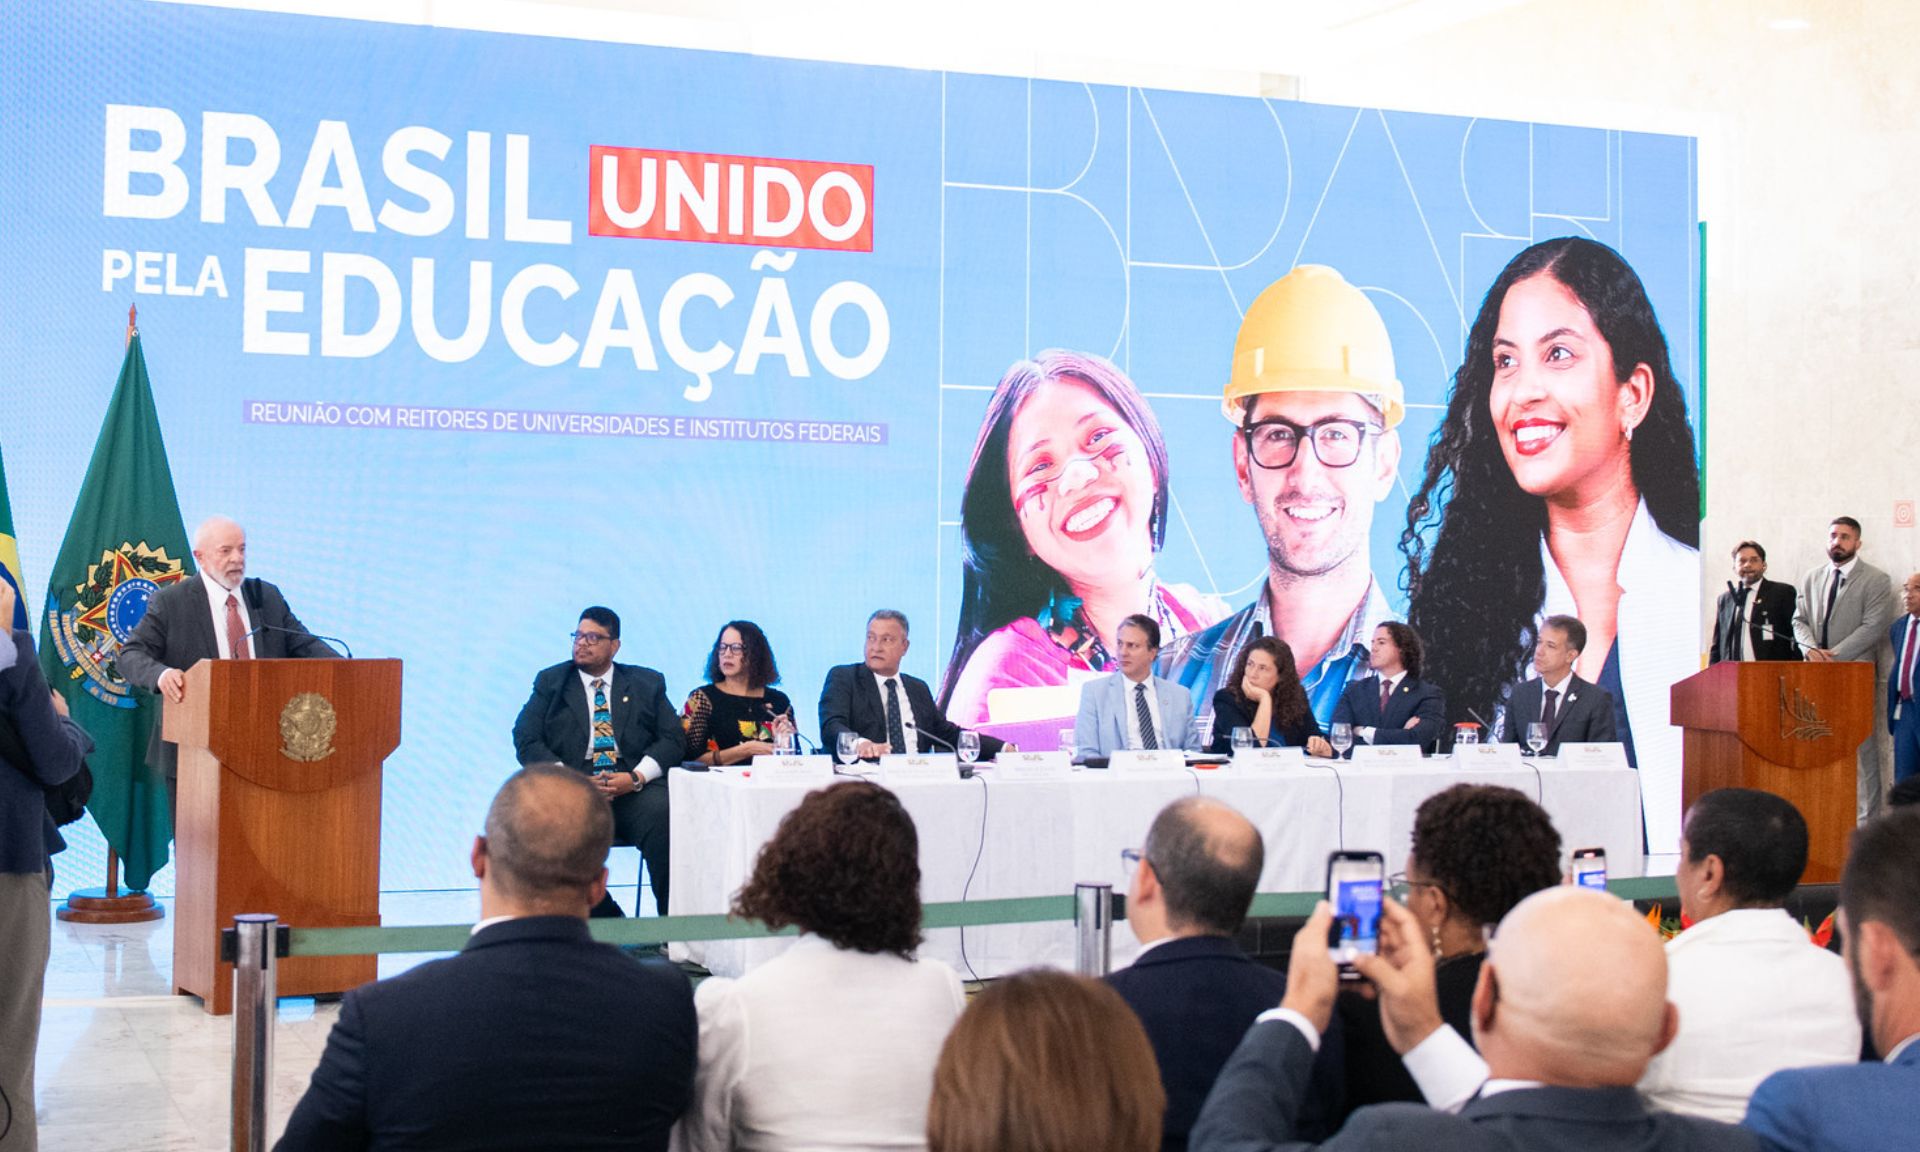 Novas obras, reformas e ampliações estão garantidas para o ensino público superior em todo o Brasil. Anúncio foi feito pelo presidente Lula, em Brasília, e alcança as 69 universidades do país